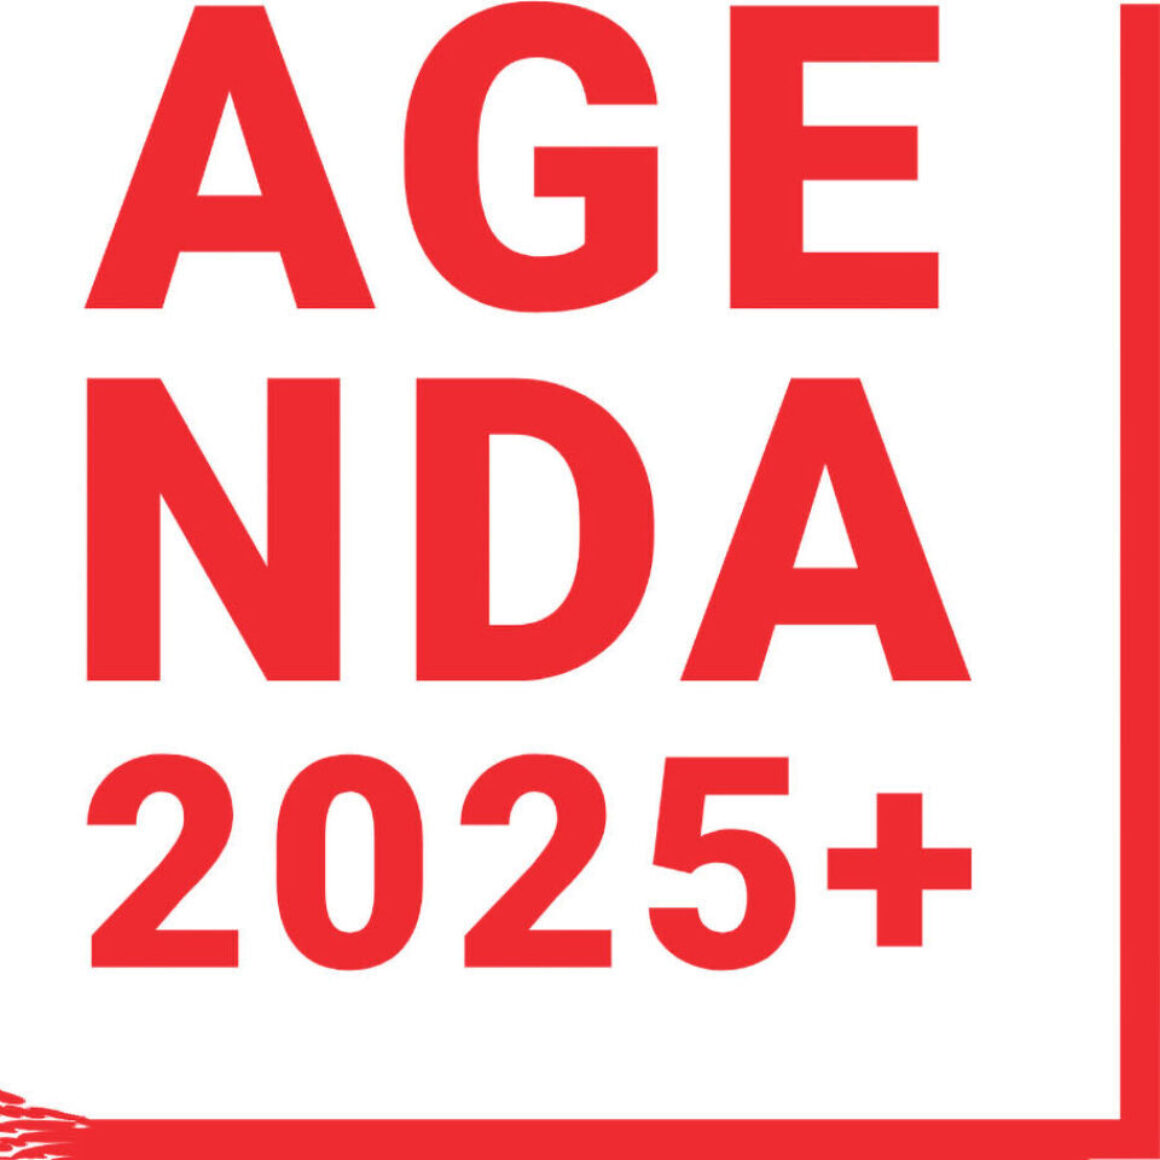 Agenda 2025+